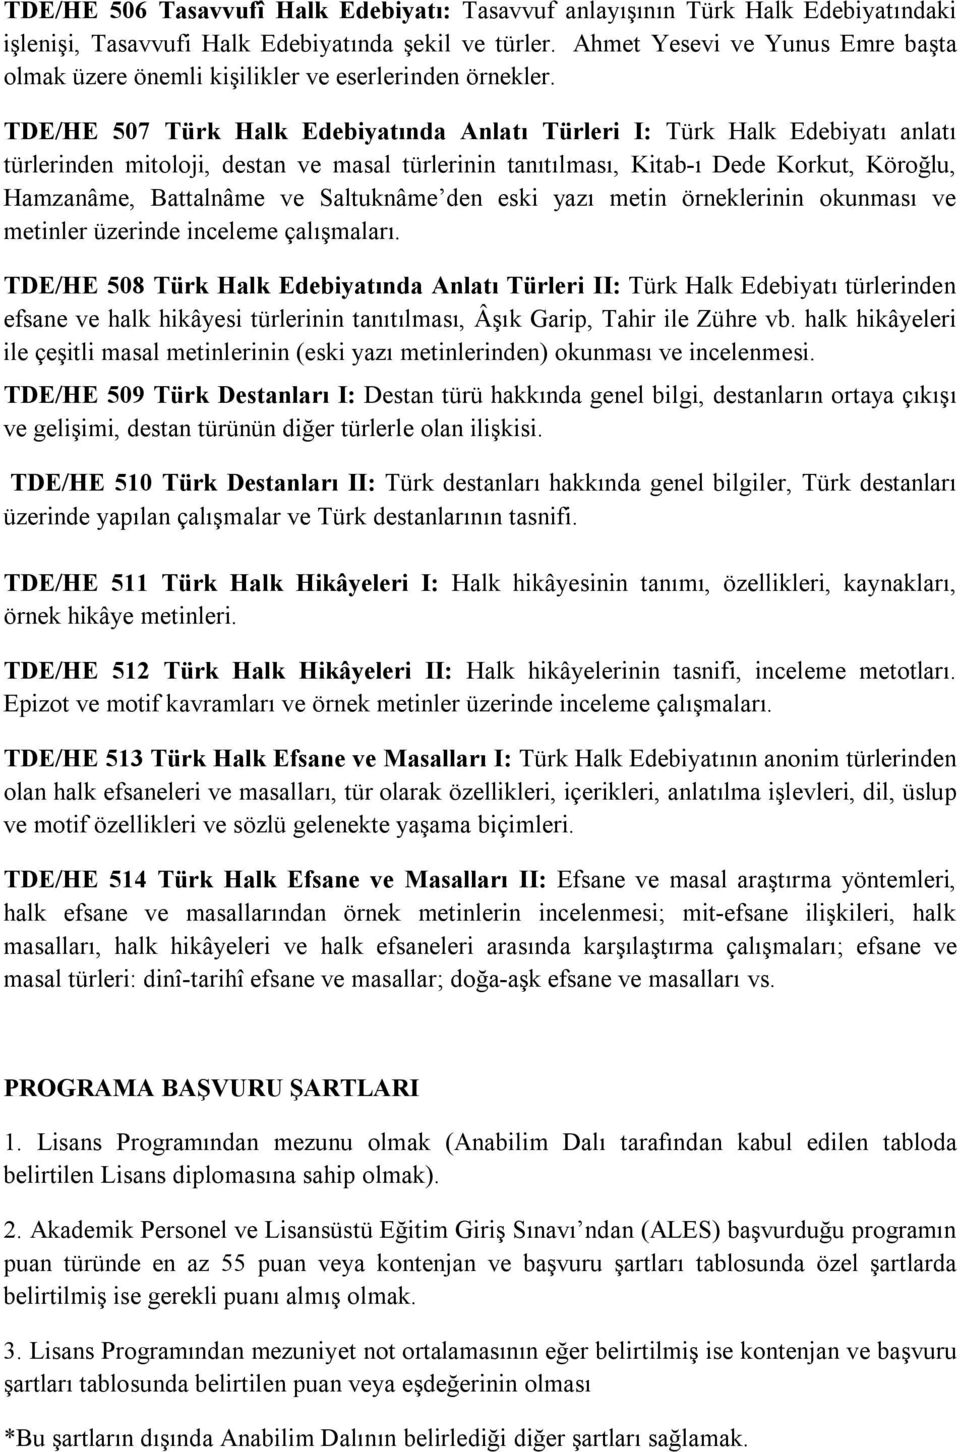 TDE/HE 507 Türk Halk Edebiyatında Anlatı Türleri I: Türk Halk Edebiyatı anlatı türlerinden mitoloji, destan ve masal türlerinin tanıtılması, Kitab-ı Dede Korkut, Köroğlu, Hamzanâme, Battalnâme ve